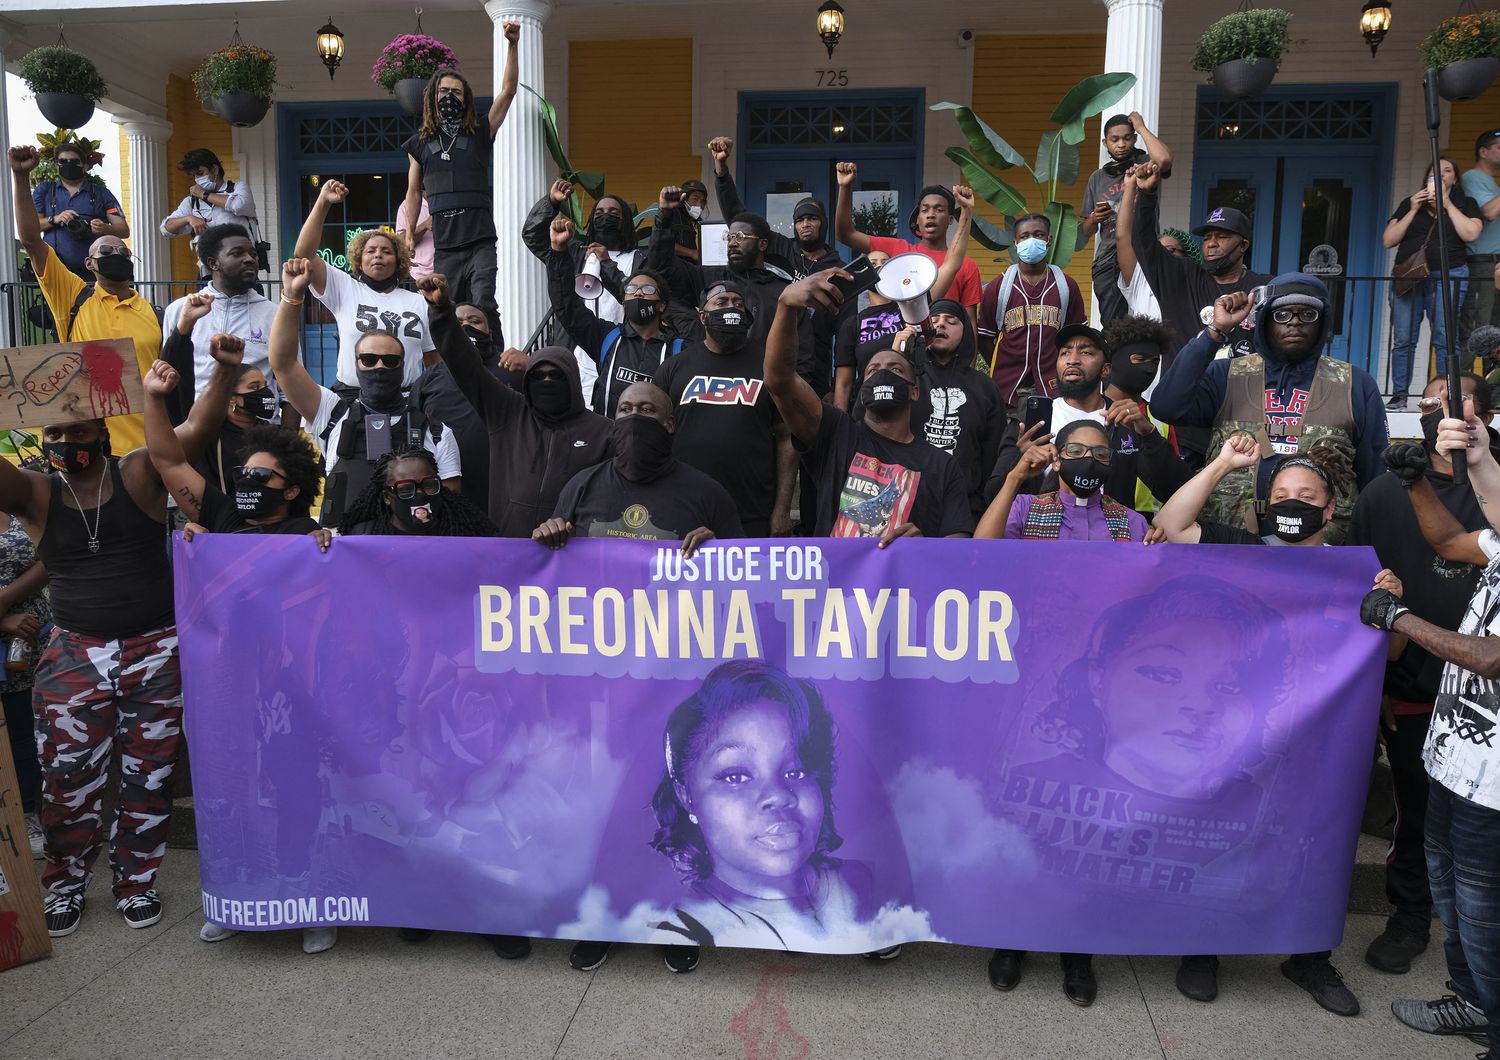 Usa morte Breonna Taylor incriminati 4 poliziotti